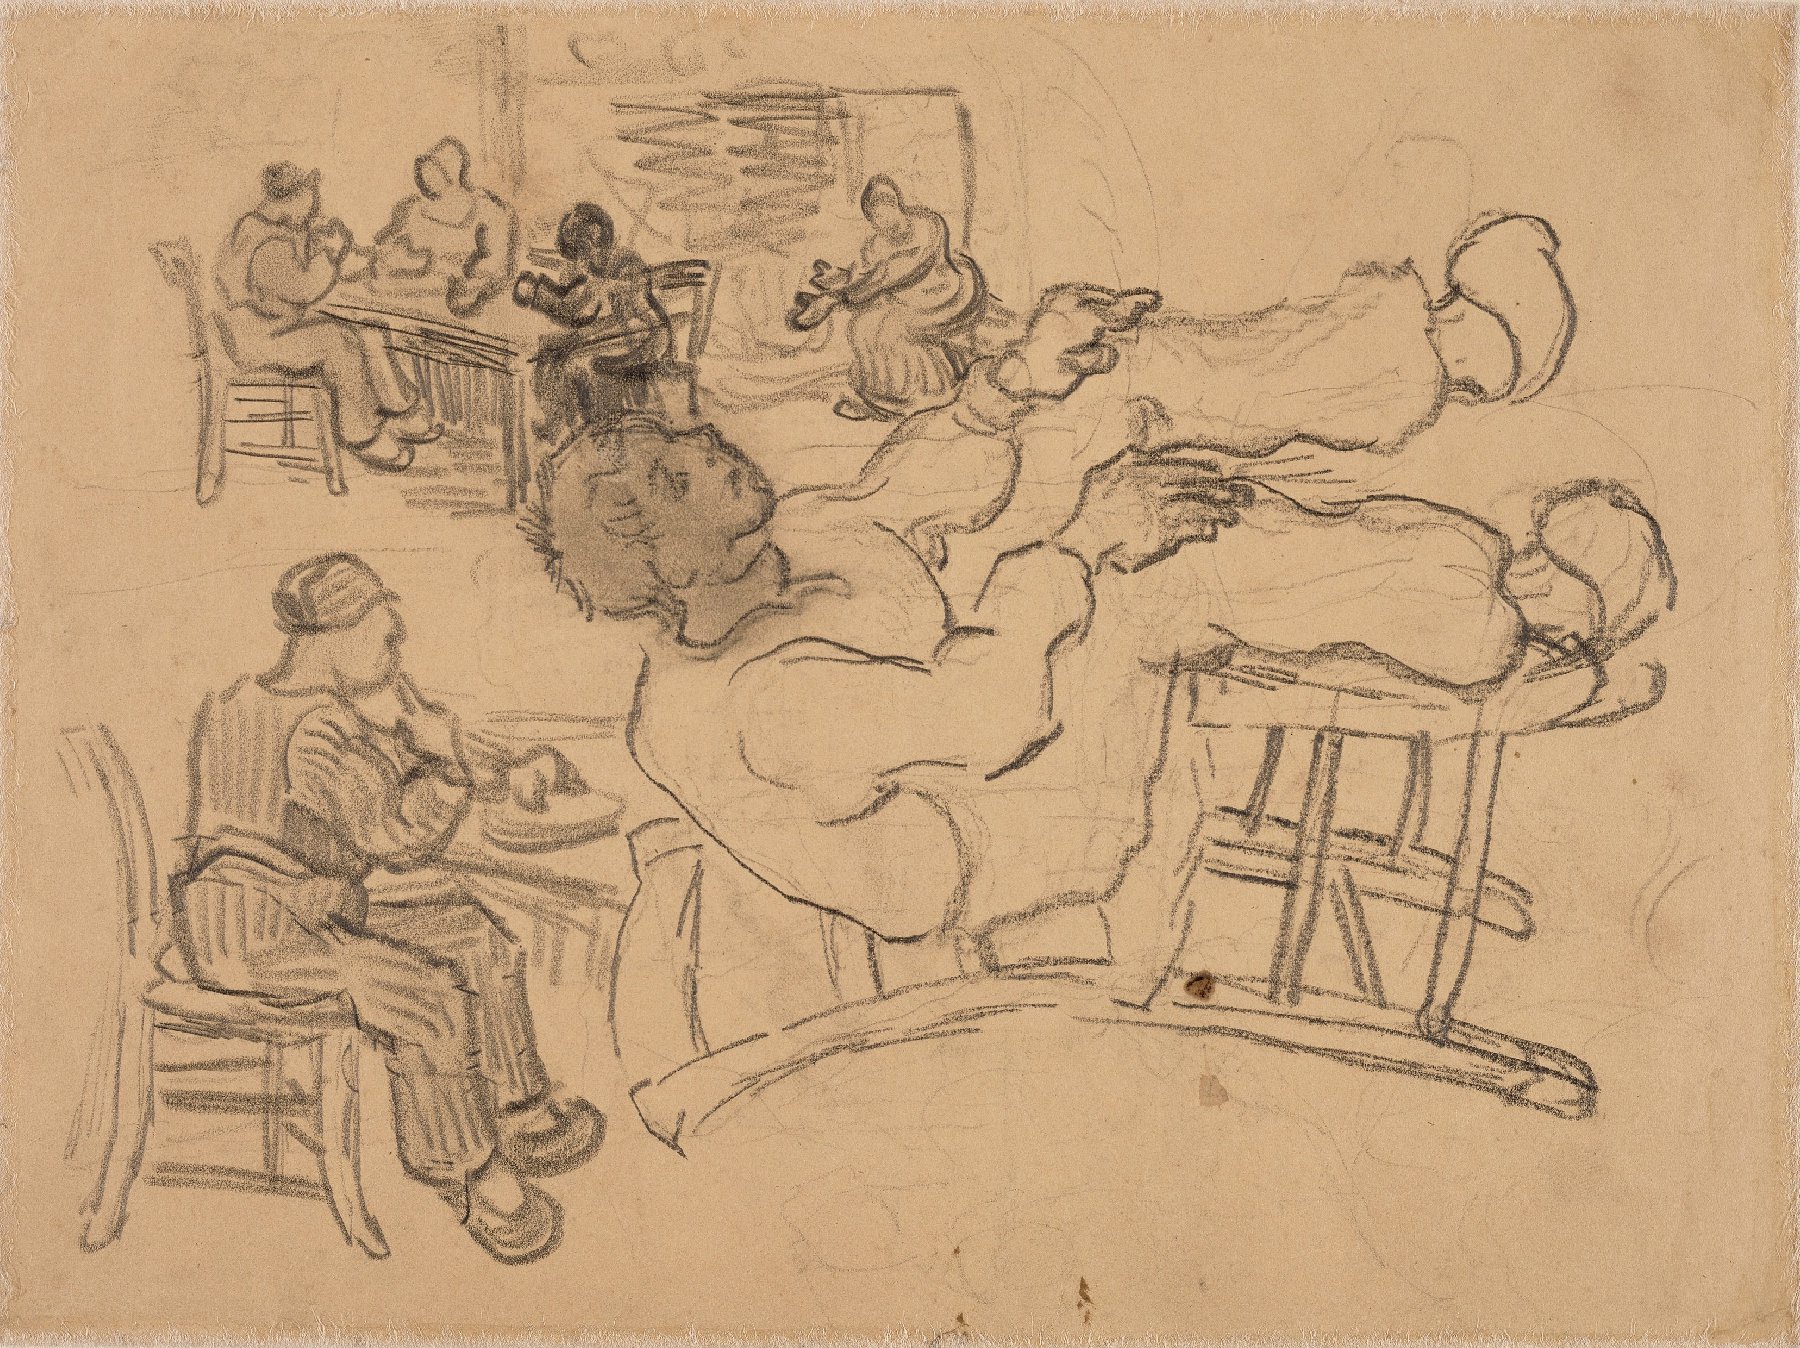 Schetsen van zittende figuren Vincent van Gogh (1853 - 1890), Saint-Rémy-de-Provence, maart-april 1890